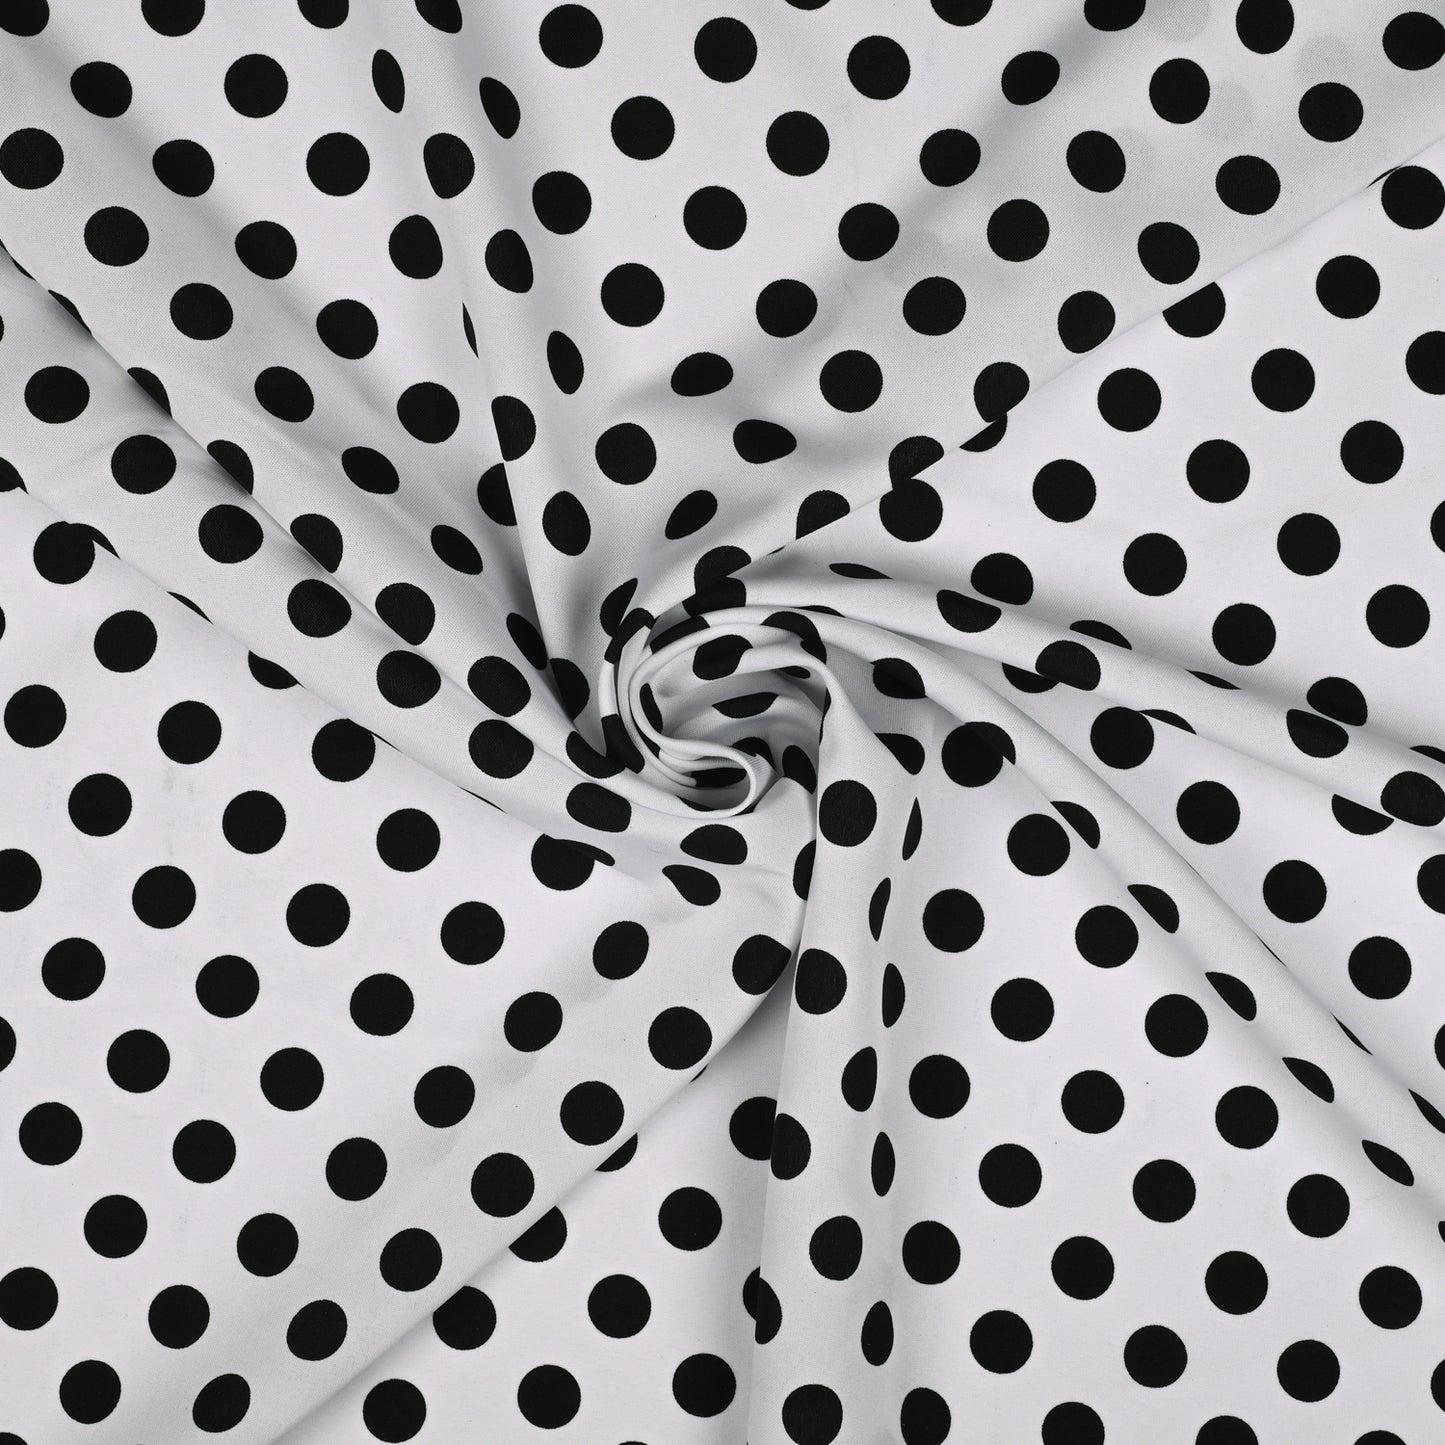 Printed Mini Matt Black Dots on White